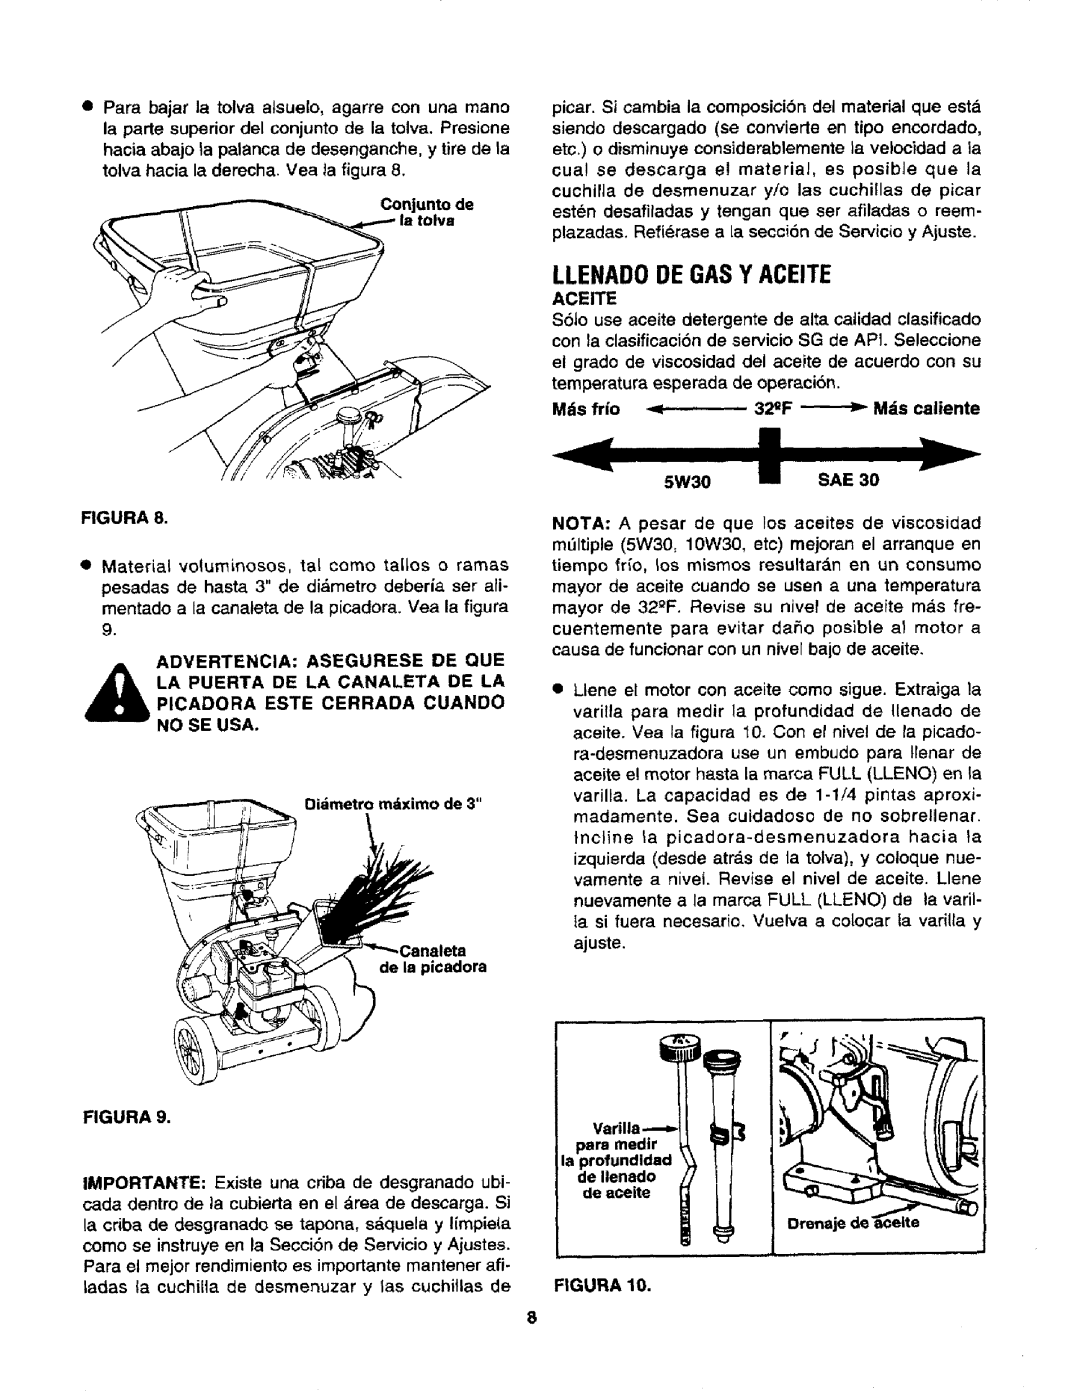 Craftsman 247.795940 manual Llenadode Gas Y Aceite, 5W30 